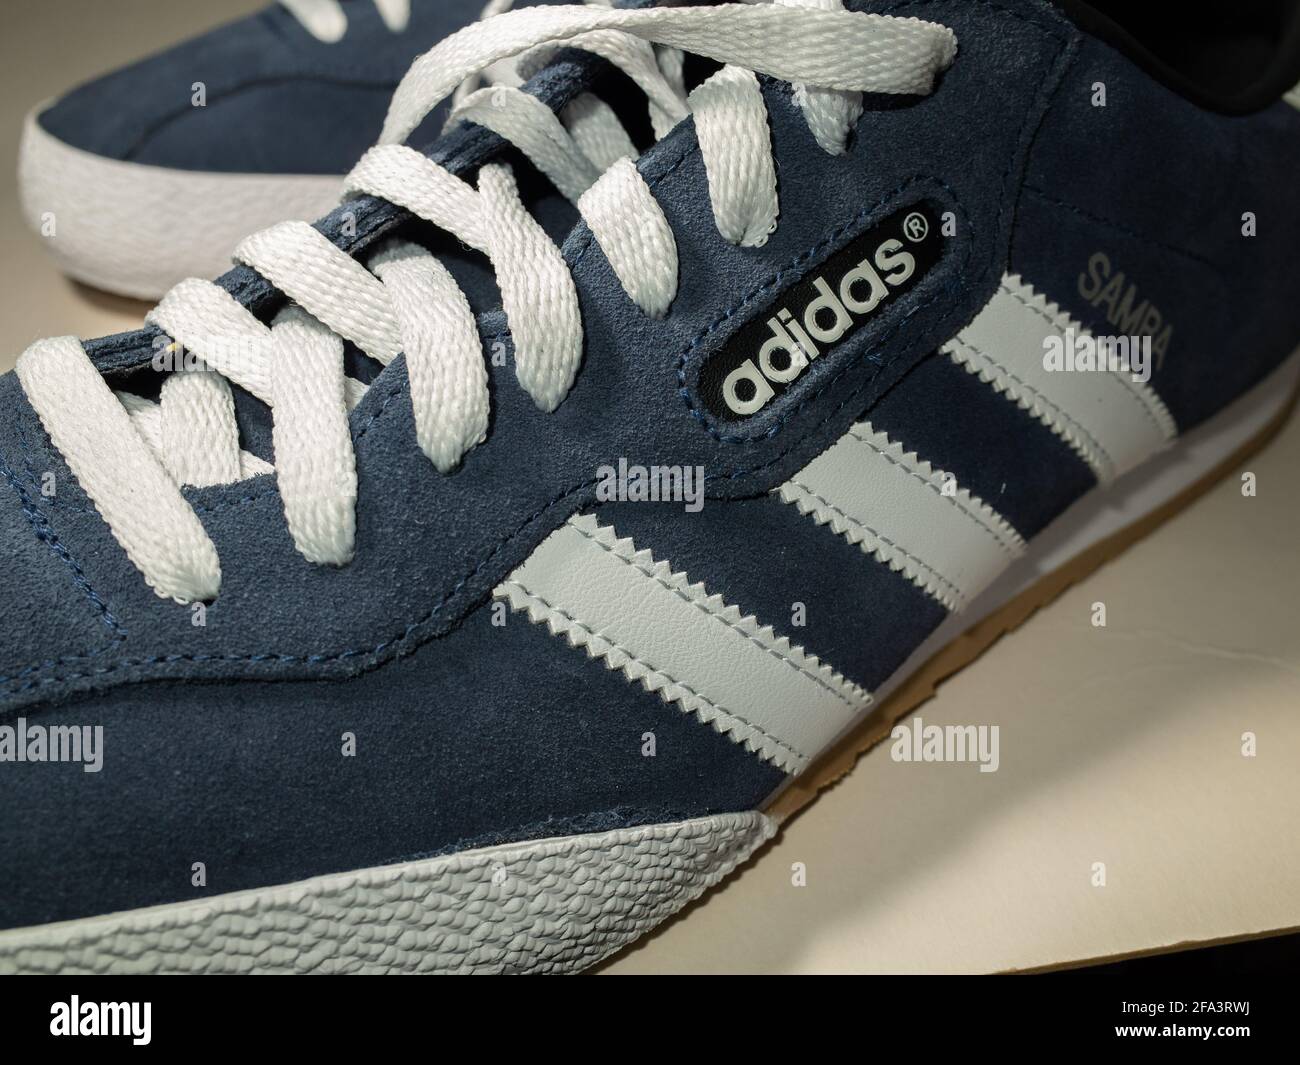 Adidas Samba trainer Shoe Blue Trainers UK Stock Photo